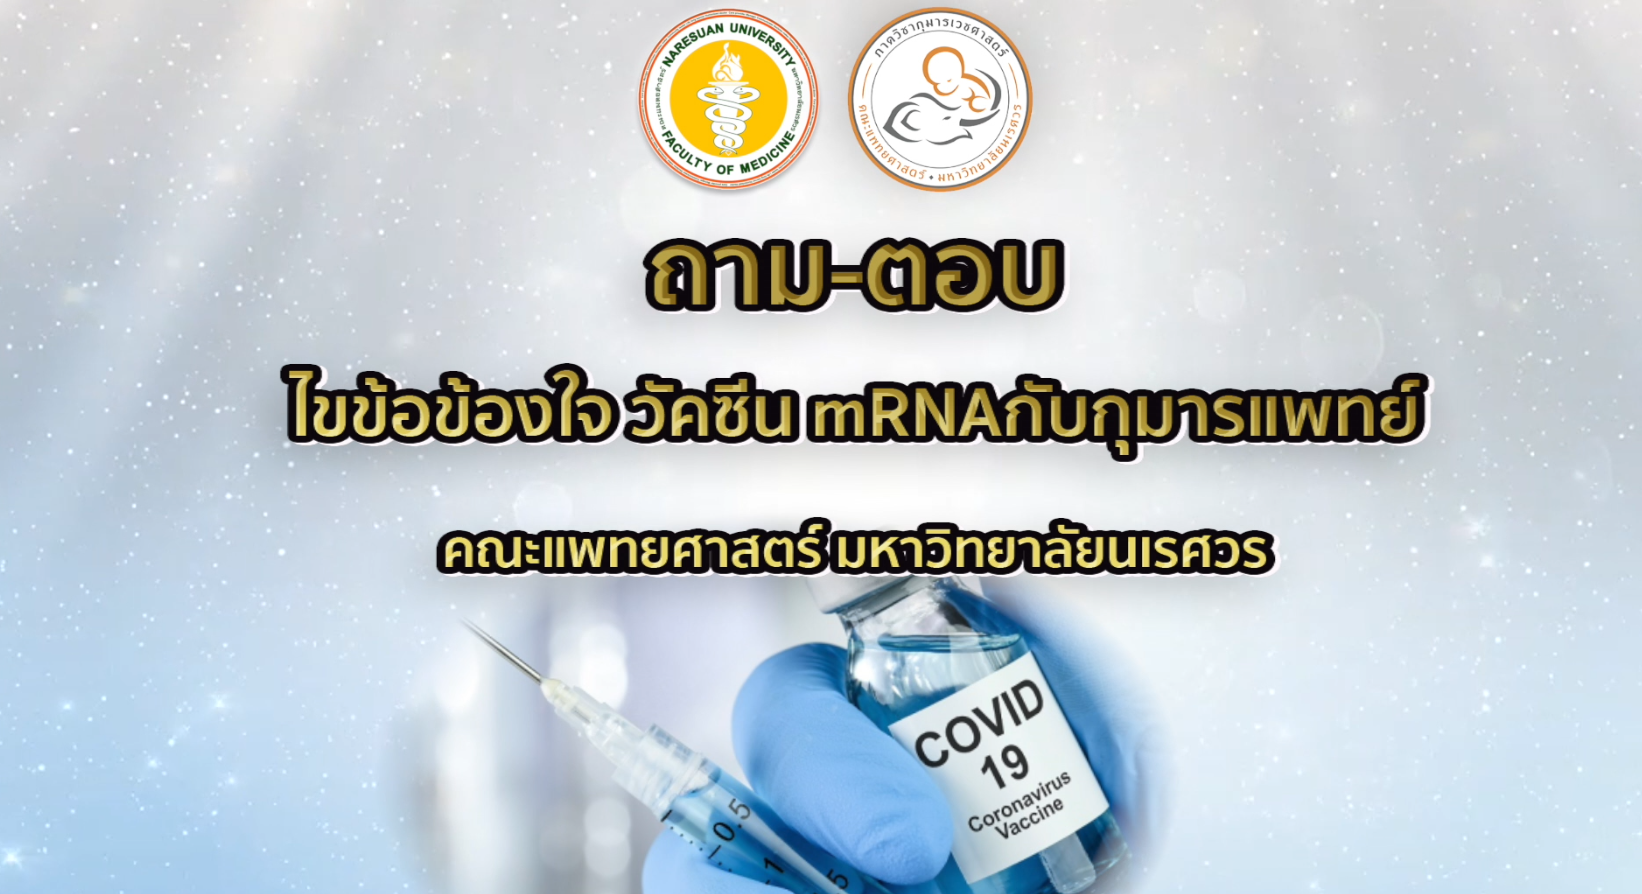 ถามตอบ วัคซีน COVID ชนิด mRNA ในเด็ก 12 ถึง 17 ปี